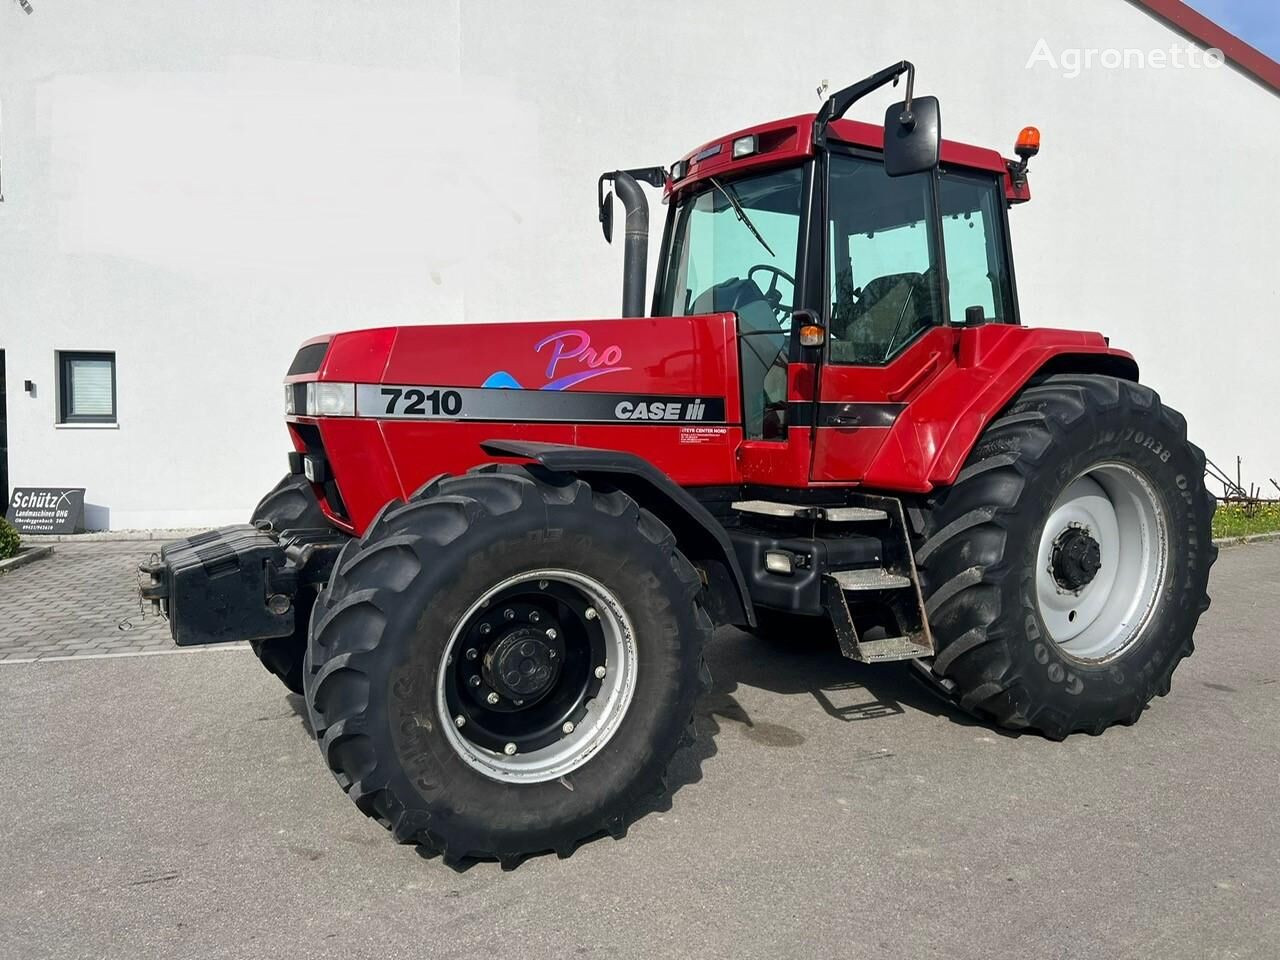 Magnum 7210 Pro wheel tractor